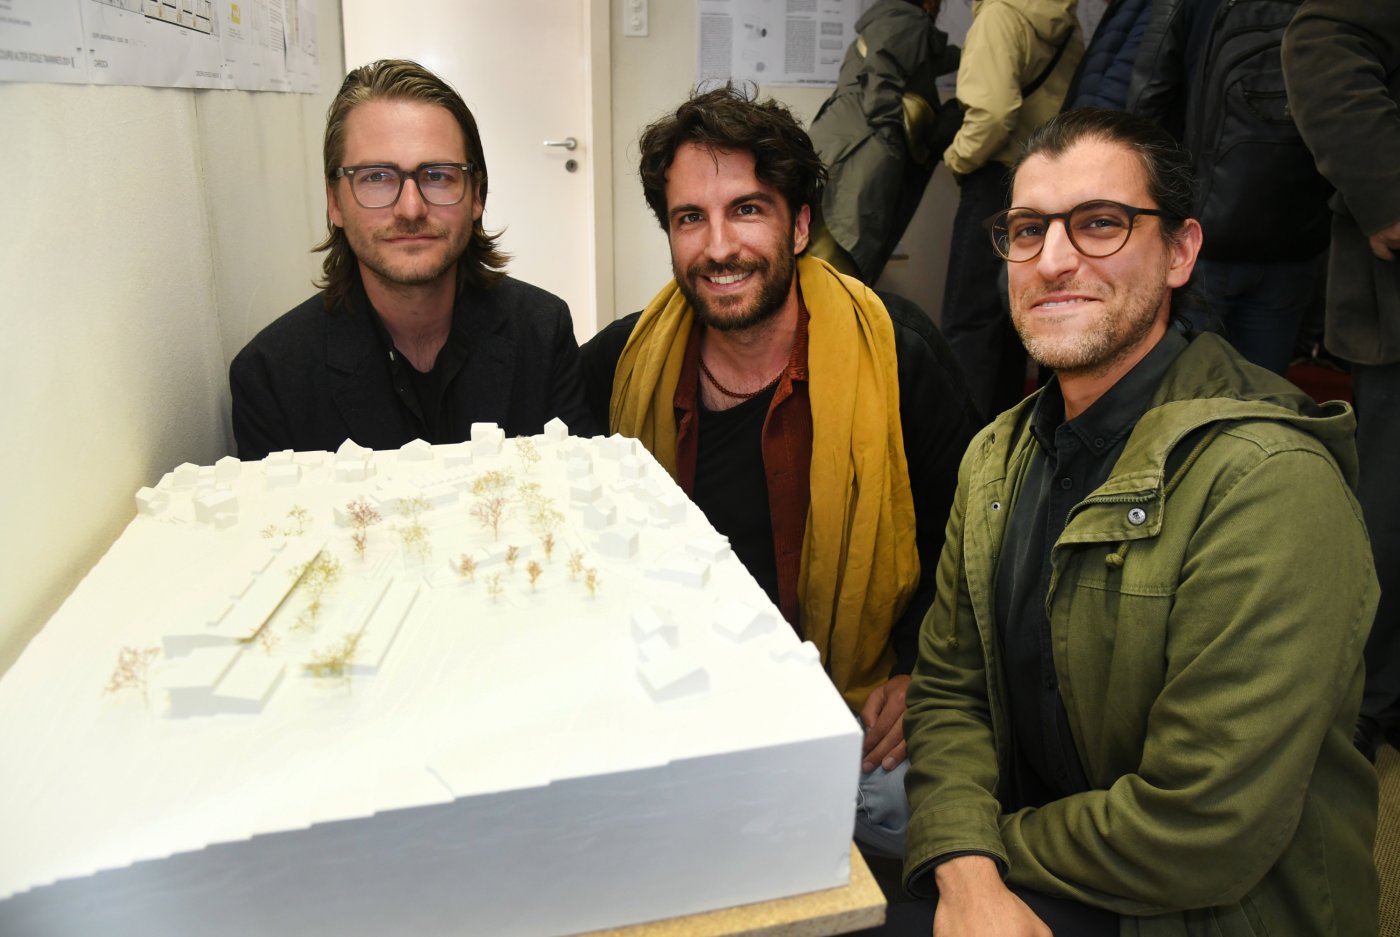 Les architectes gagnants devant leur maquette. De gauche à droite: Hervé Doutaz, Matthias Stauber et Alexandre Gobbini.